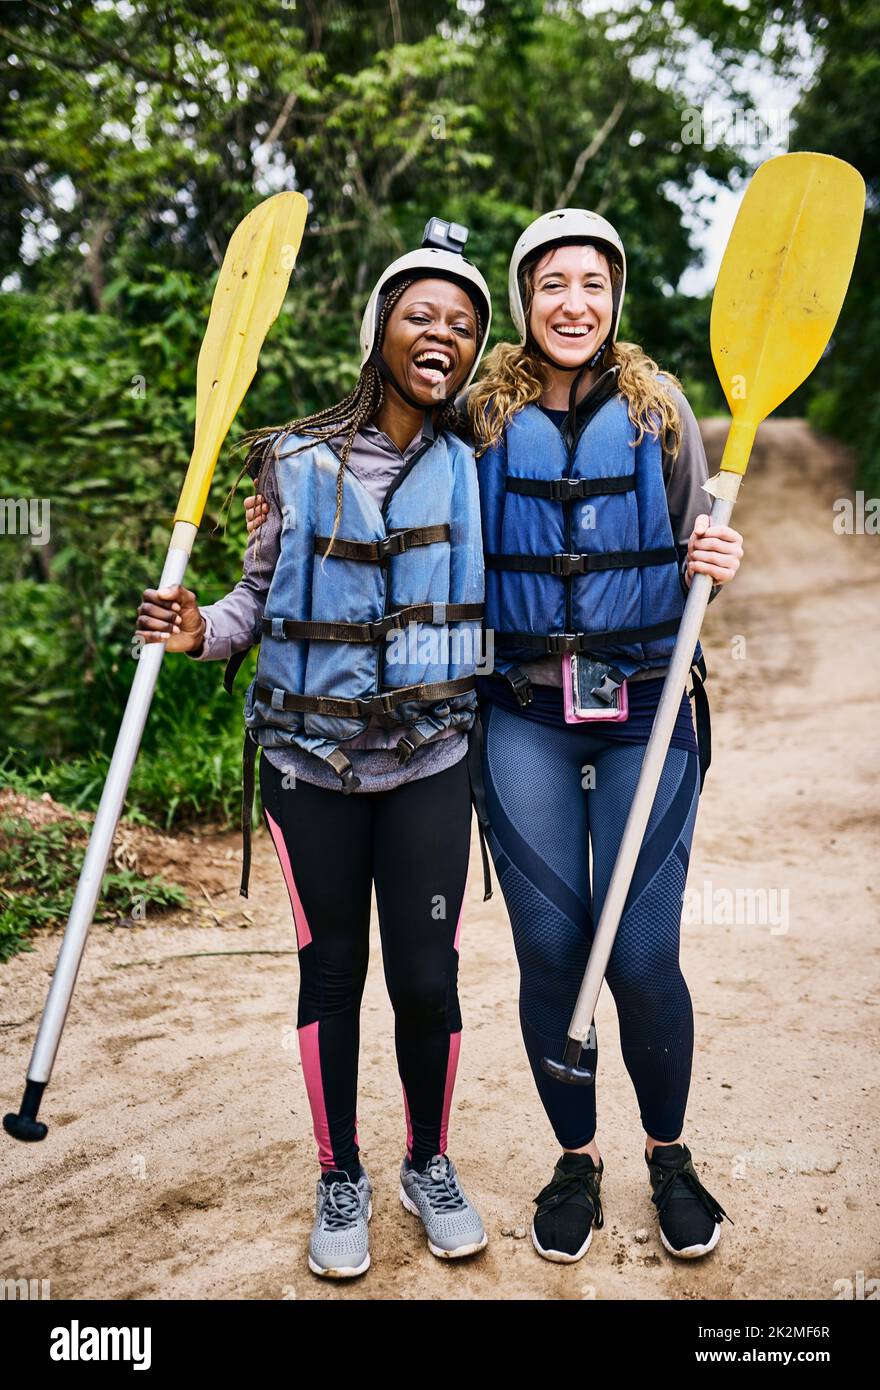 Wir sind bereit, wieder Rafting zu gehen. Porträt von zwei fröhlichen jungen Frauen, die eine Schutzkleidung tragen und tagsüber ein Ruderpaddel im Freien halten. Stockfoto